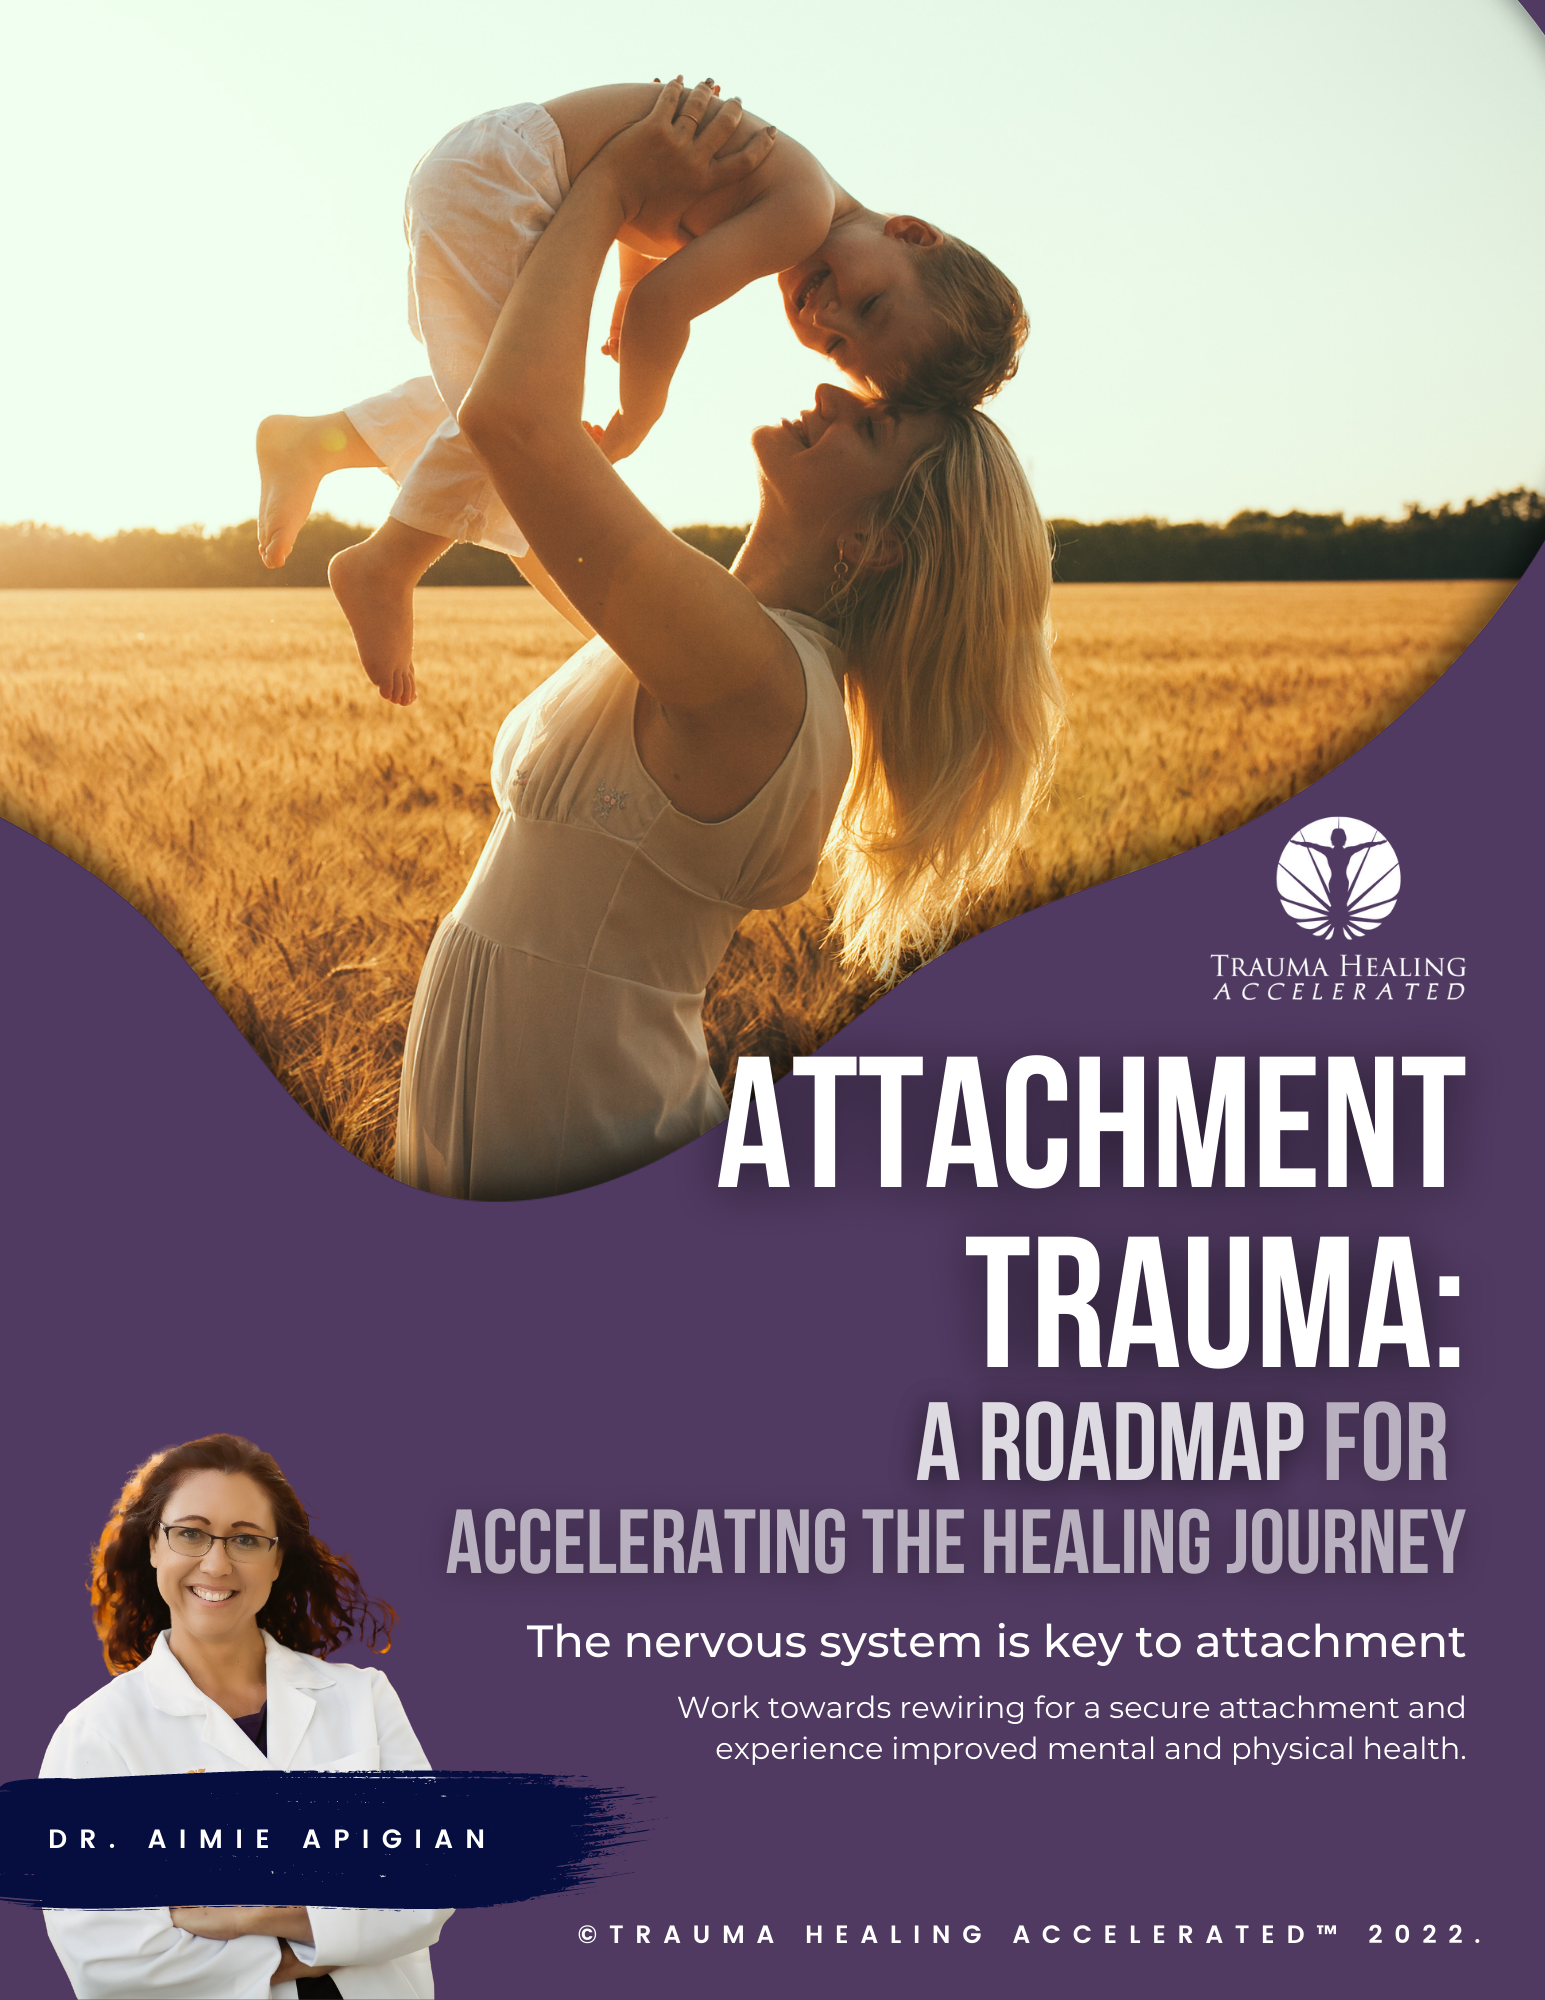 Attachment Trauma